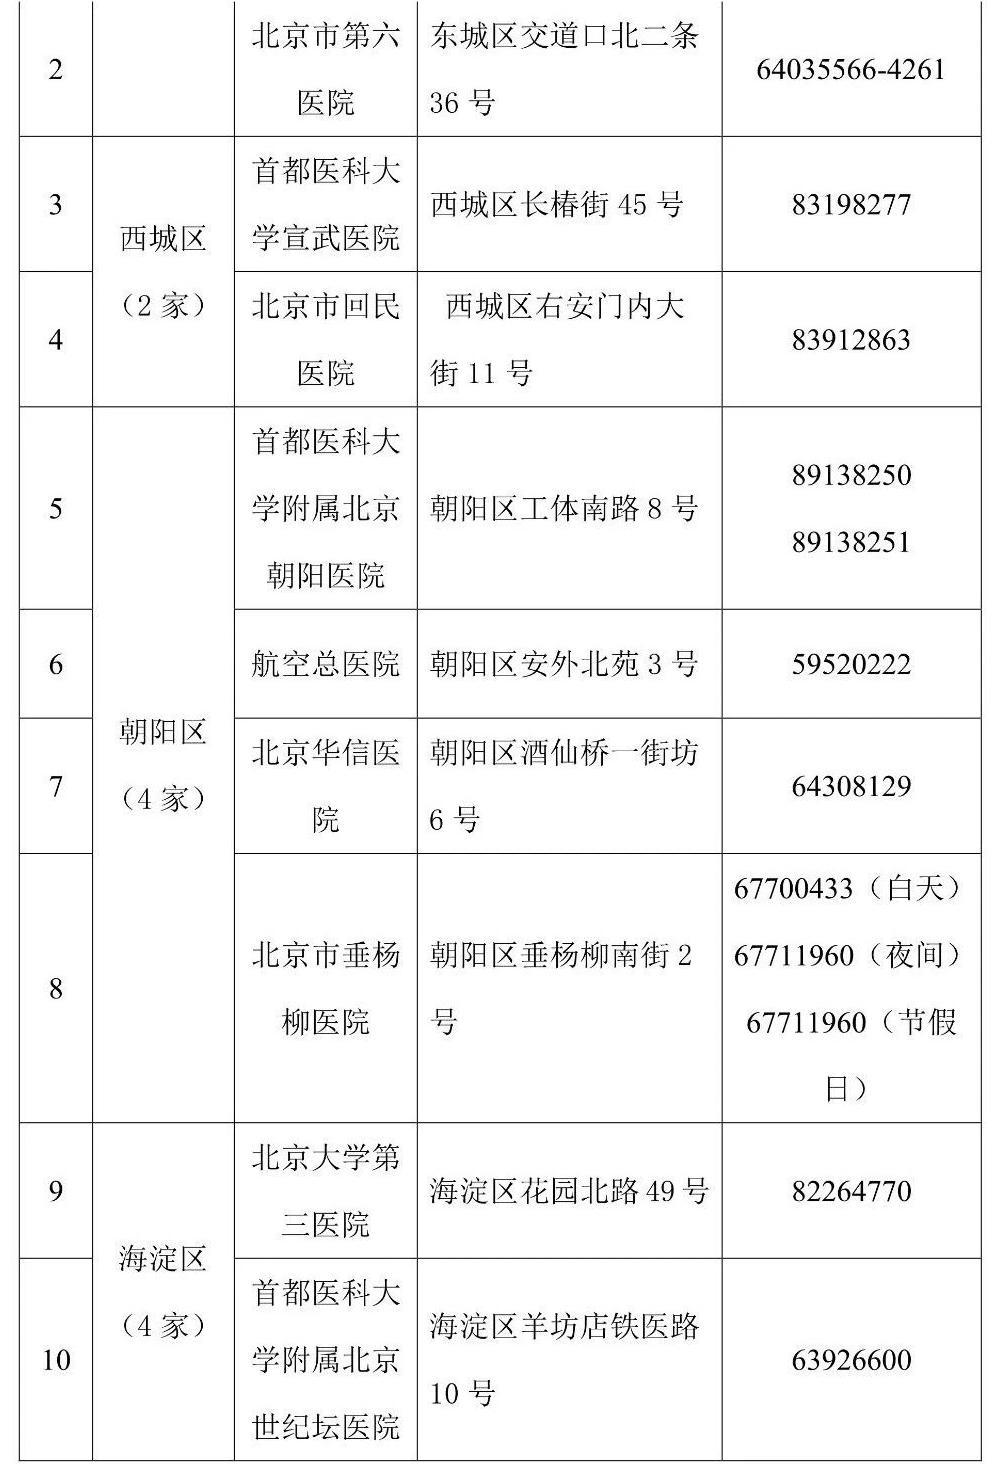 北京发布首批45家核酸检测电话预约服务公立医疗机构名录